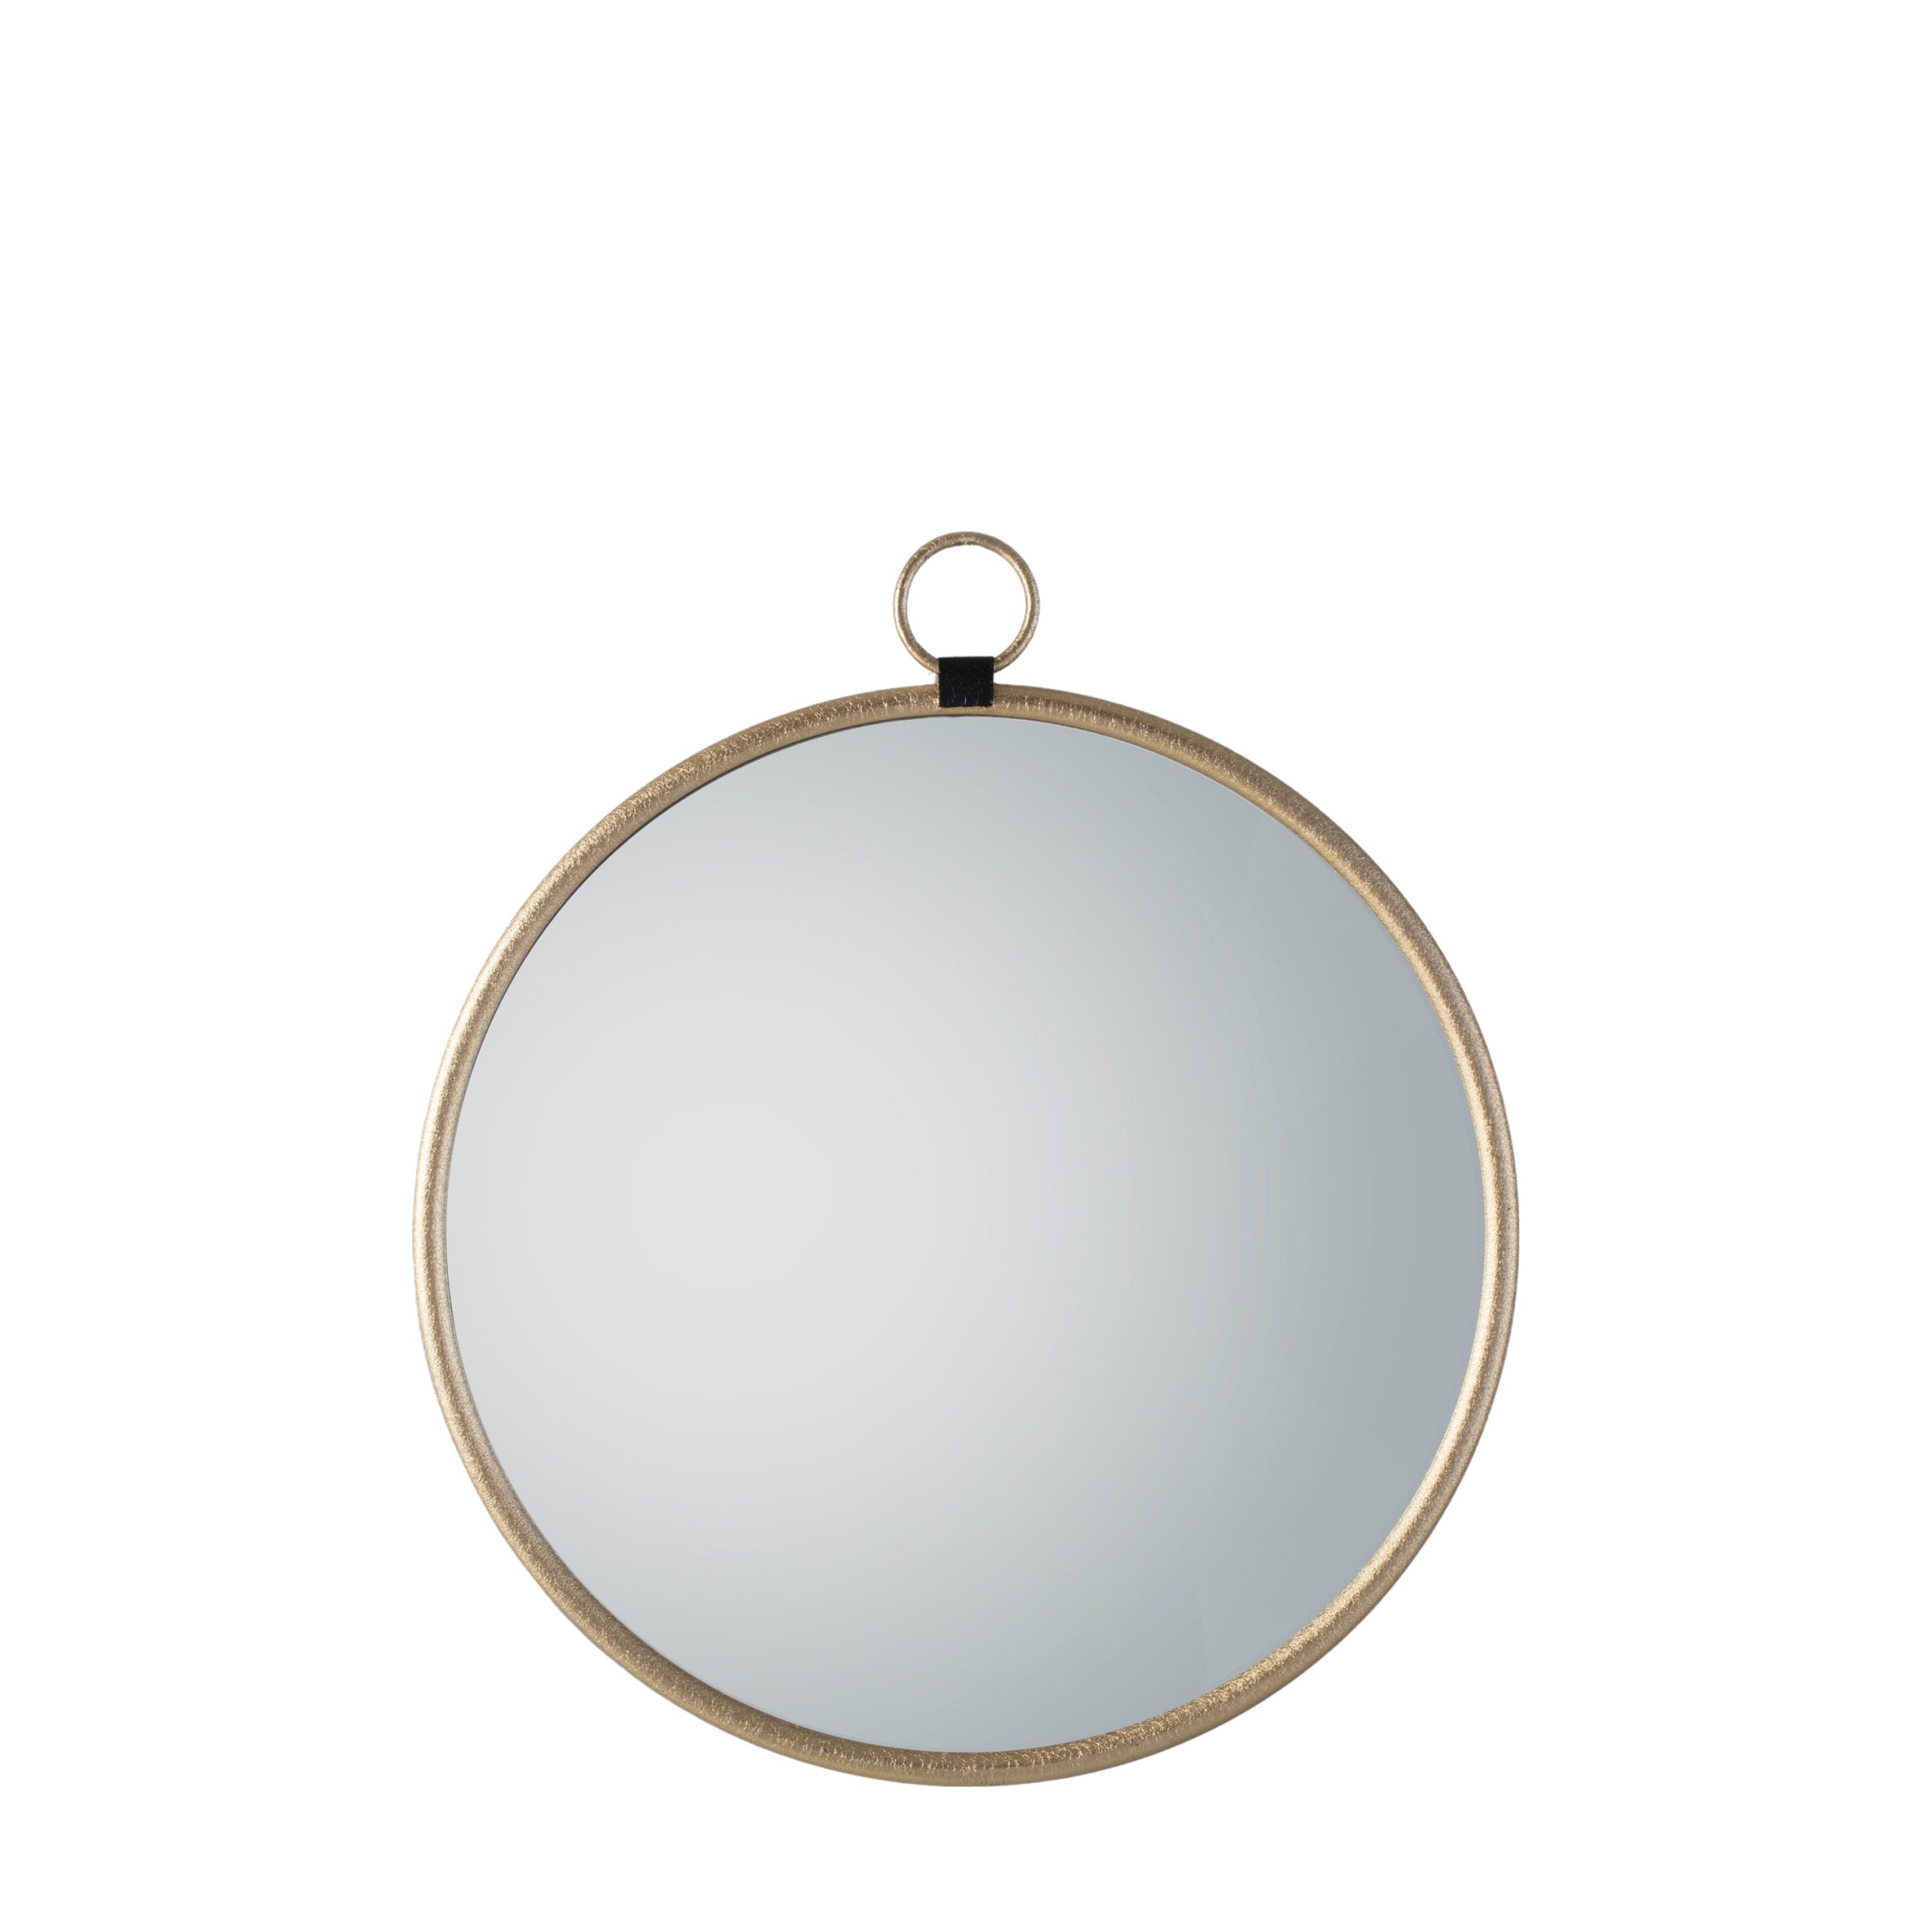 Gallery Direct Bayswater Gold Round Mirror